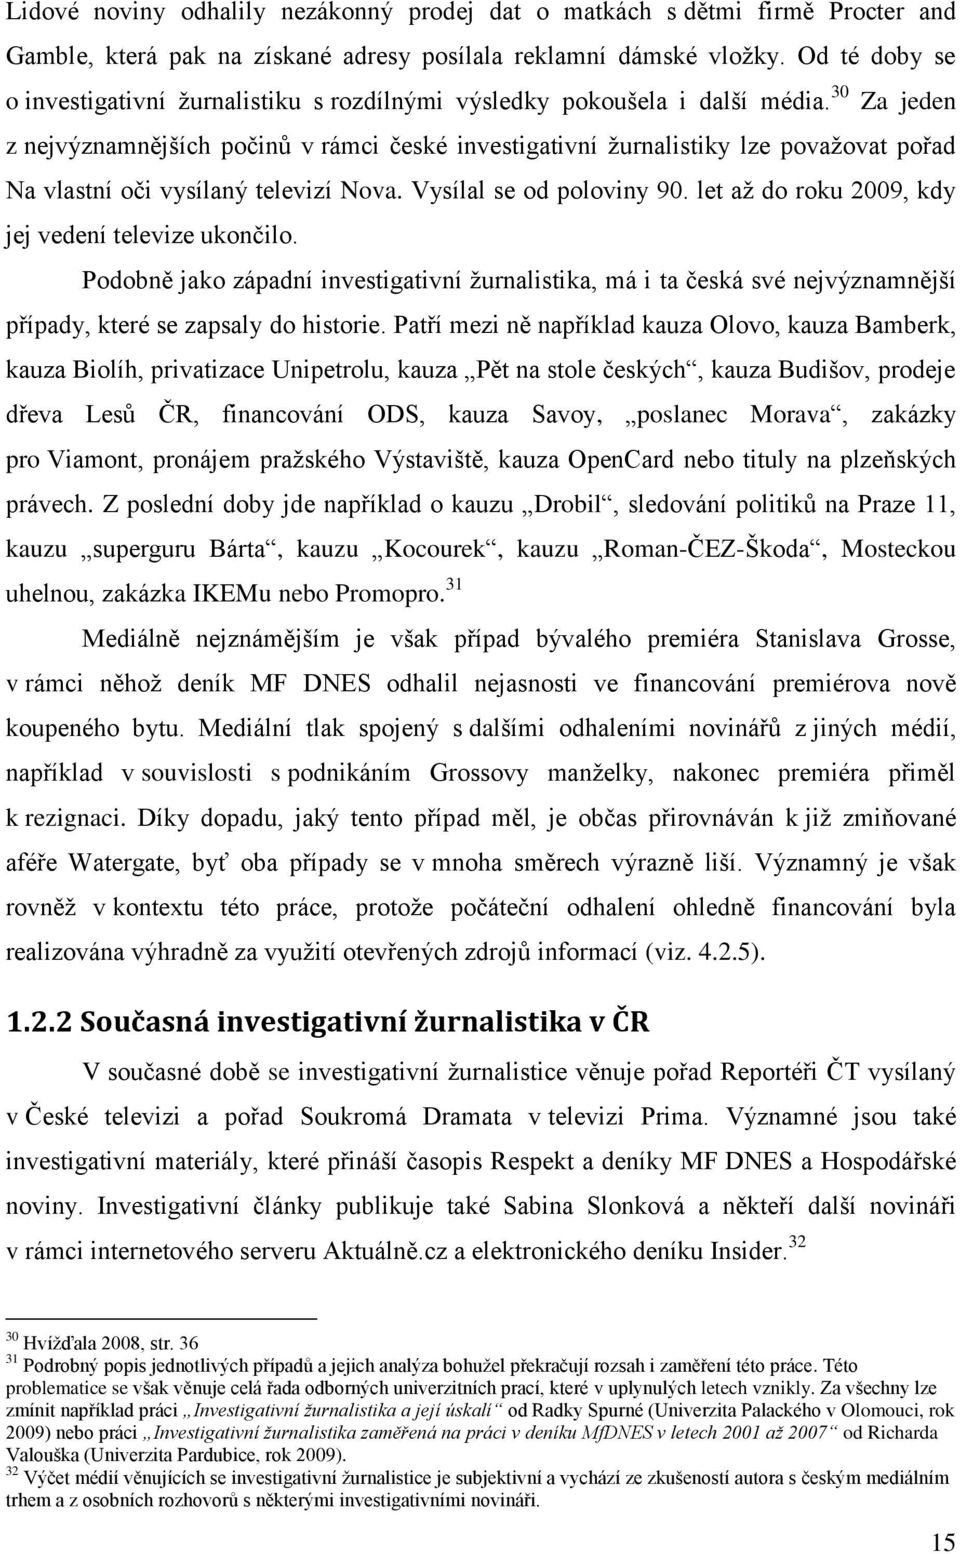 INVESTIGATIVNÍ ŽURNALISTIKA REALIZOVANÁ Z OTEVŘENÝCH ZDROJŮ - PDF Stažení  zdarma